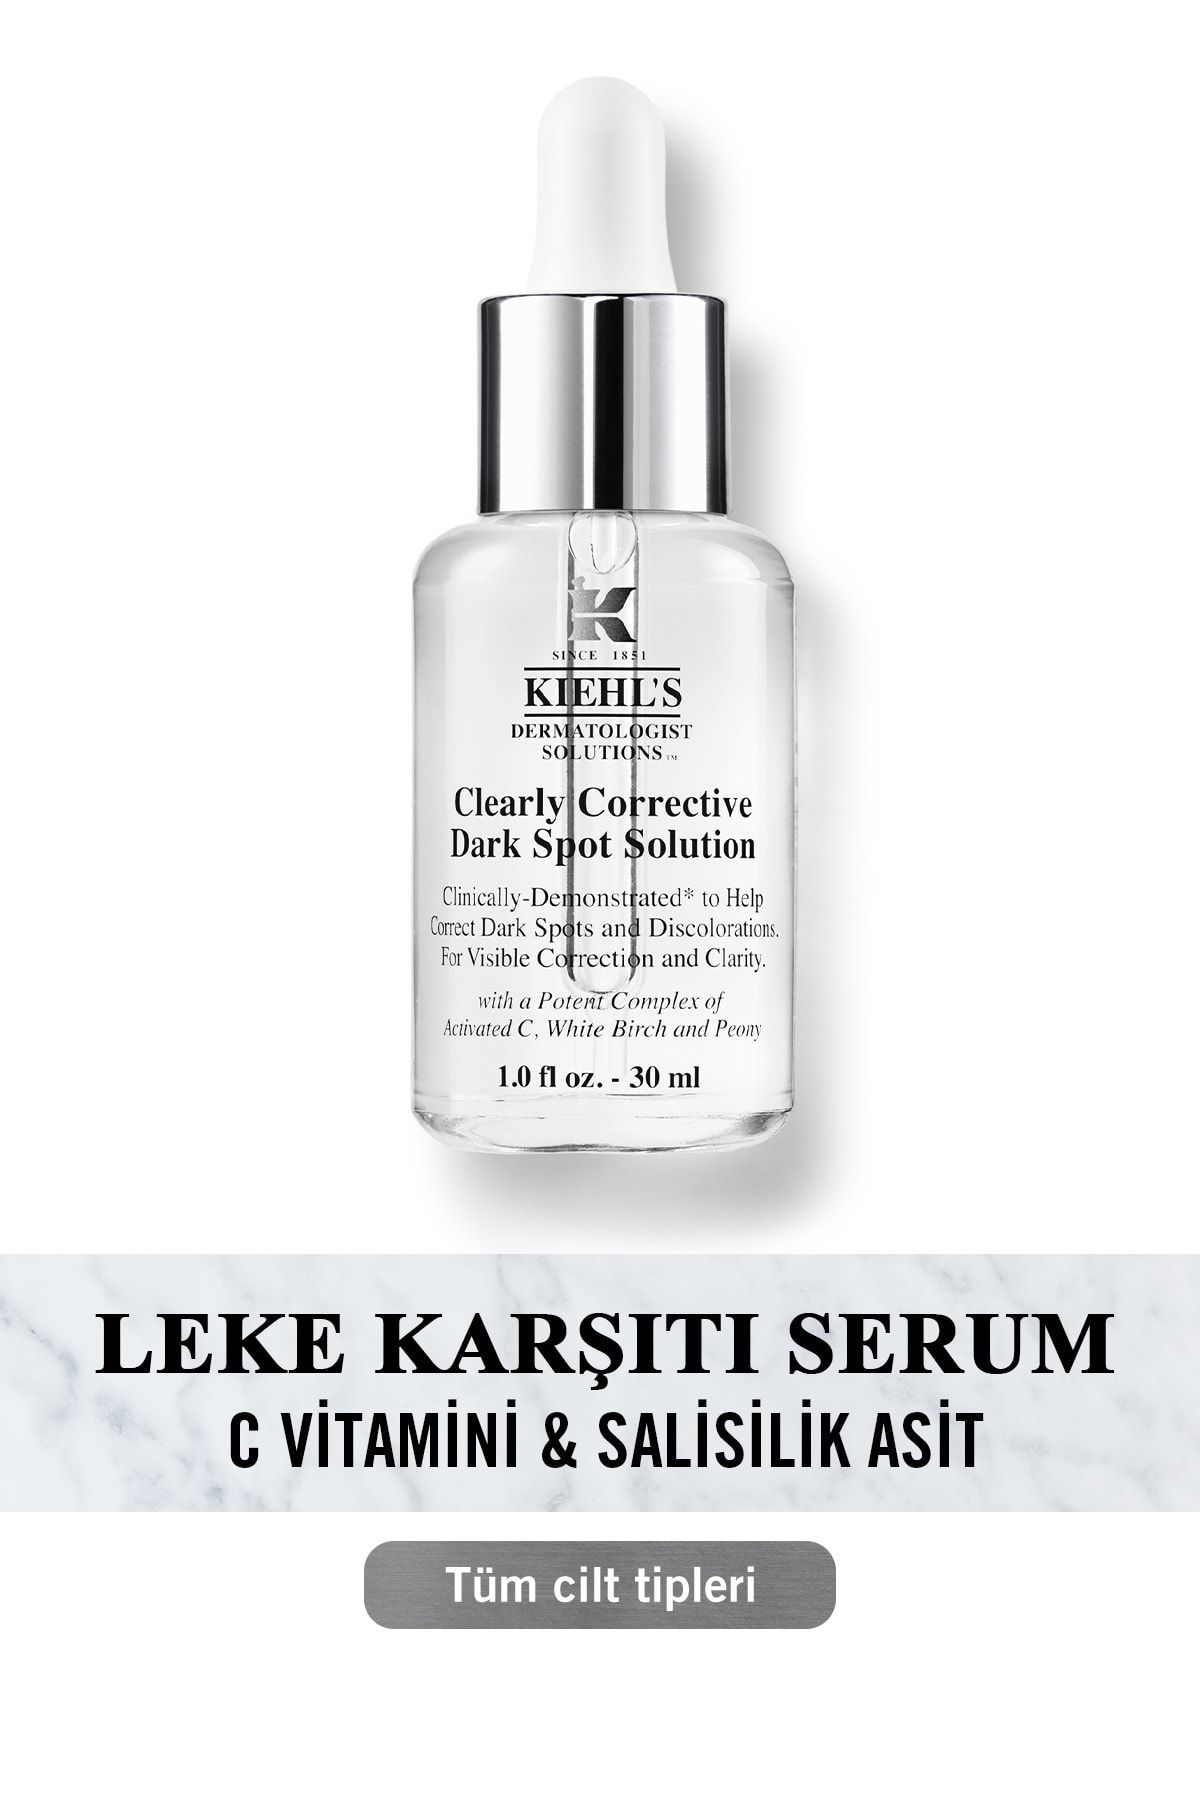 Kiehl's Clearly Corrective Koyu Leke Karşıtı Serum - C Vitamini & Salisilik Asit Içeriğiyle 30 Ml